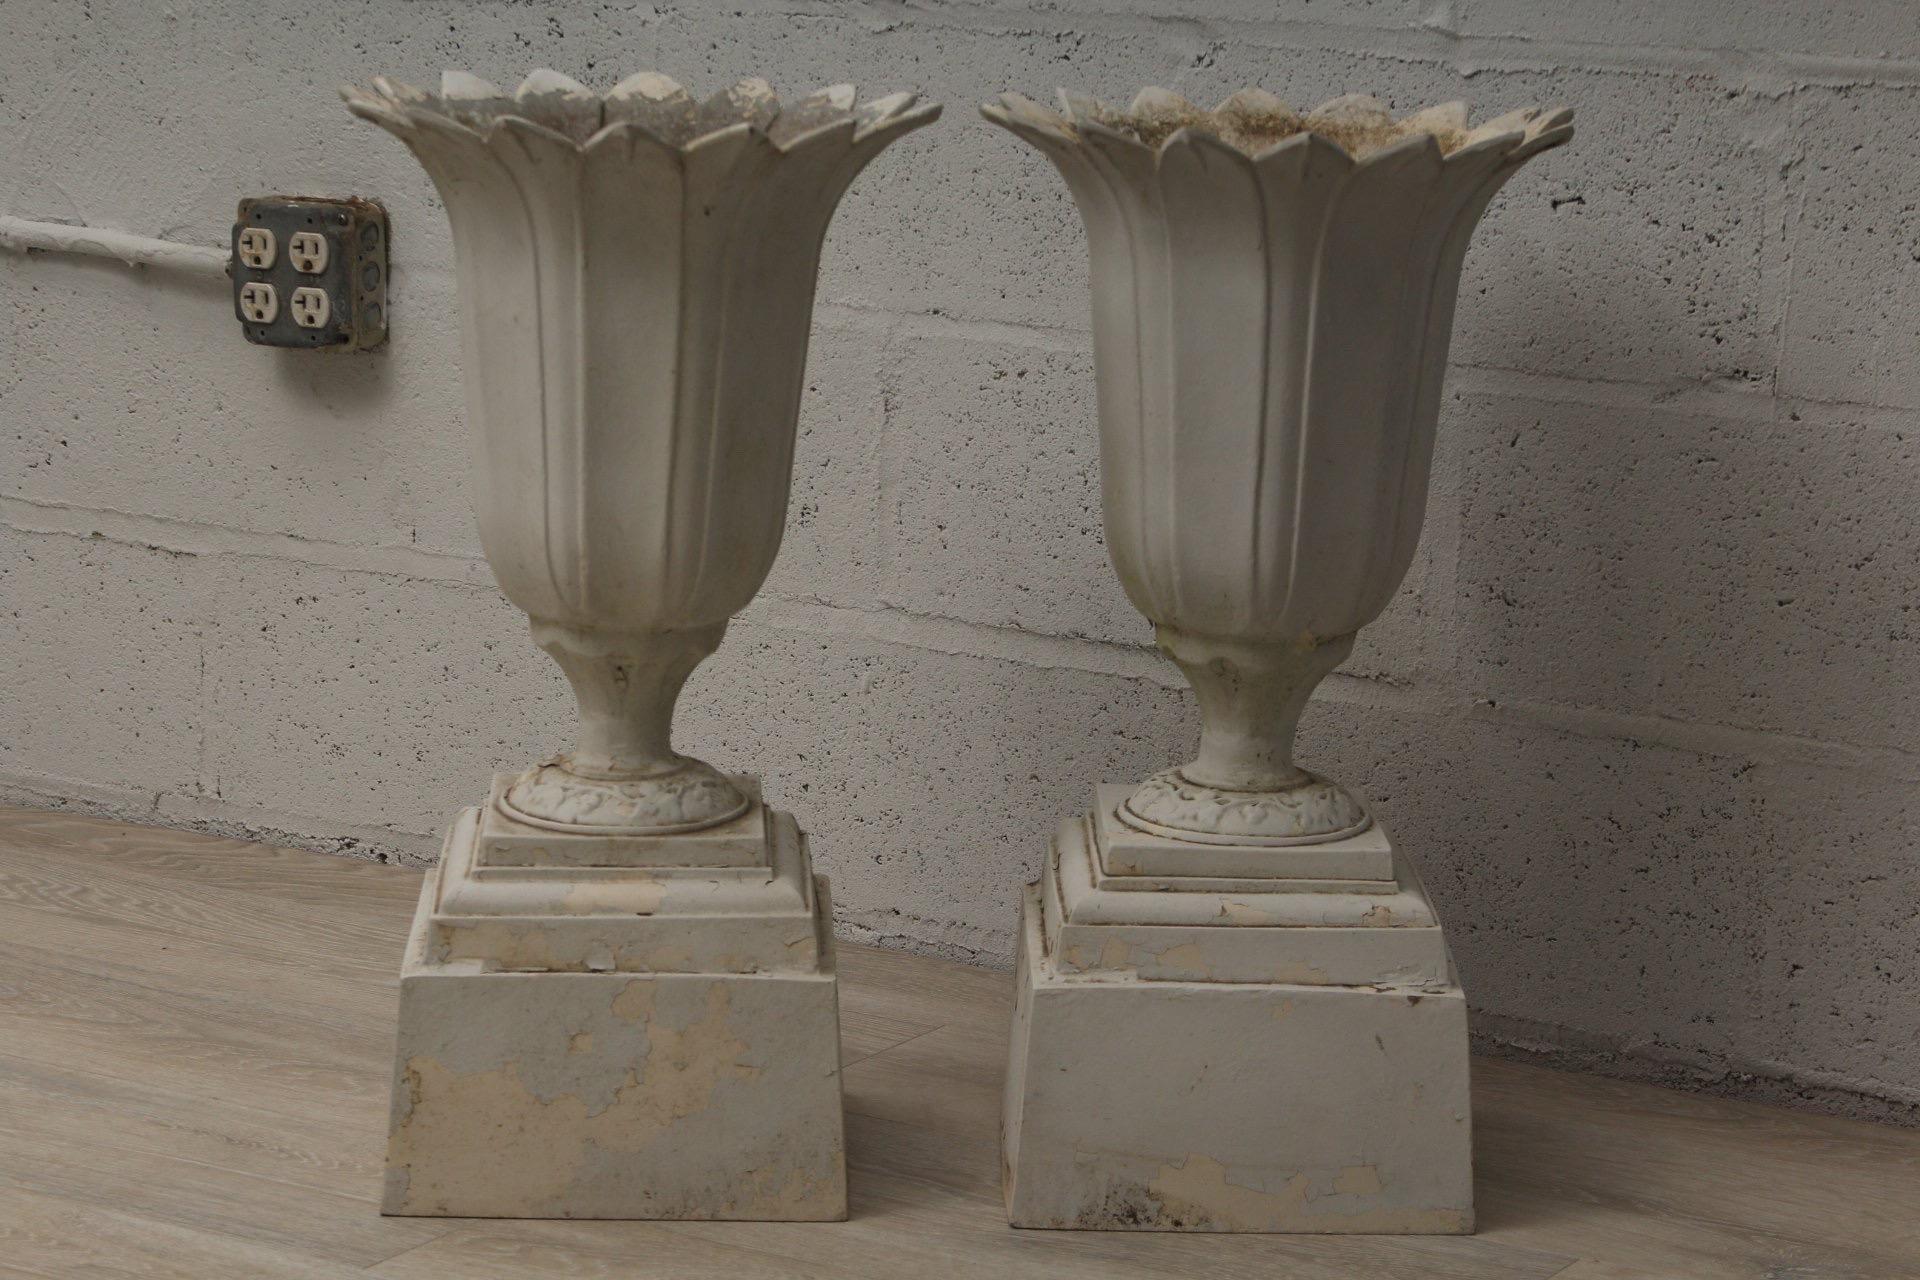 Ein Paar Pflanzgefäße aus Aluminium im Vintage-Stil in Weiß. 

Importiert, ca. 1980-1990.

Abmessungen: 28